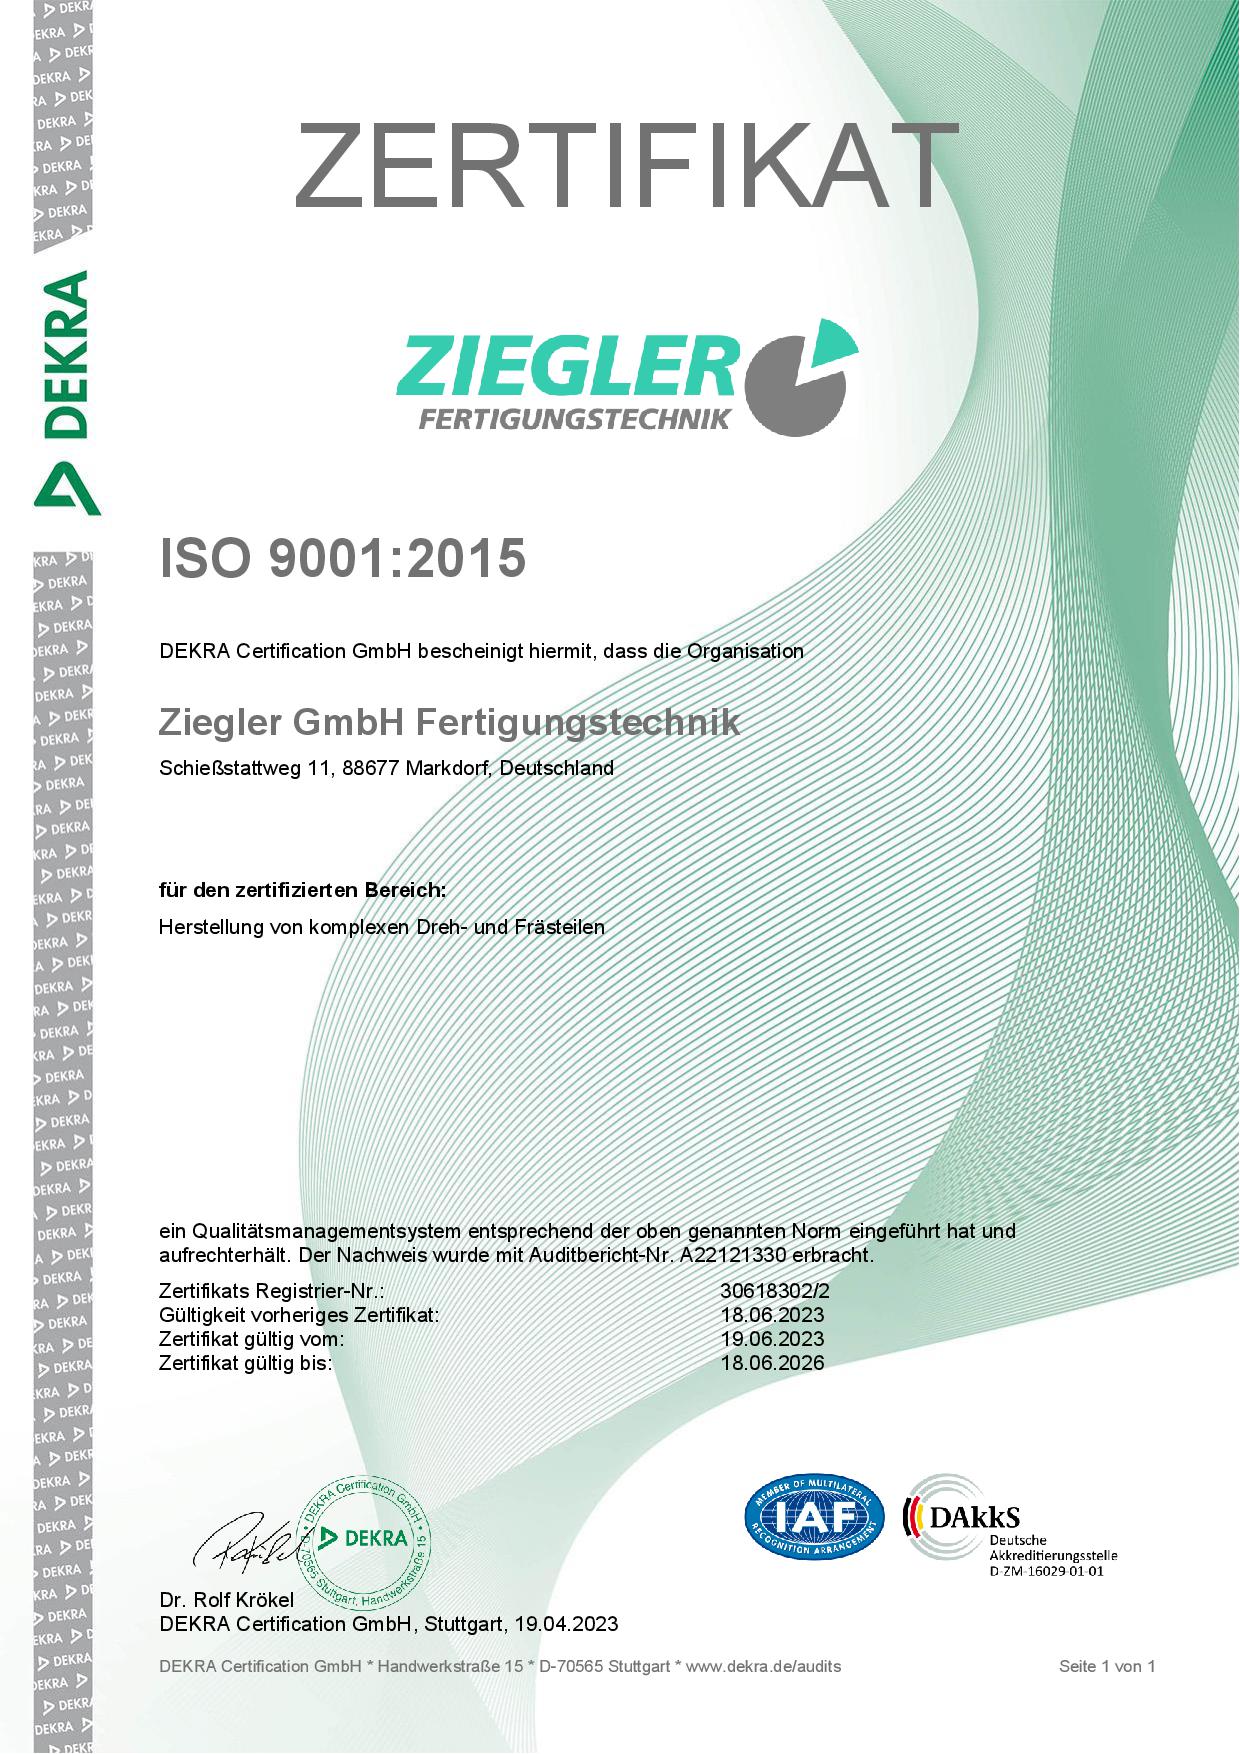 DE-ISO-Zertifikat-ISO-9001_2015-de.jpg